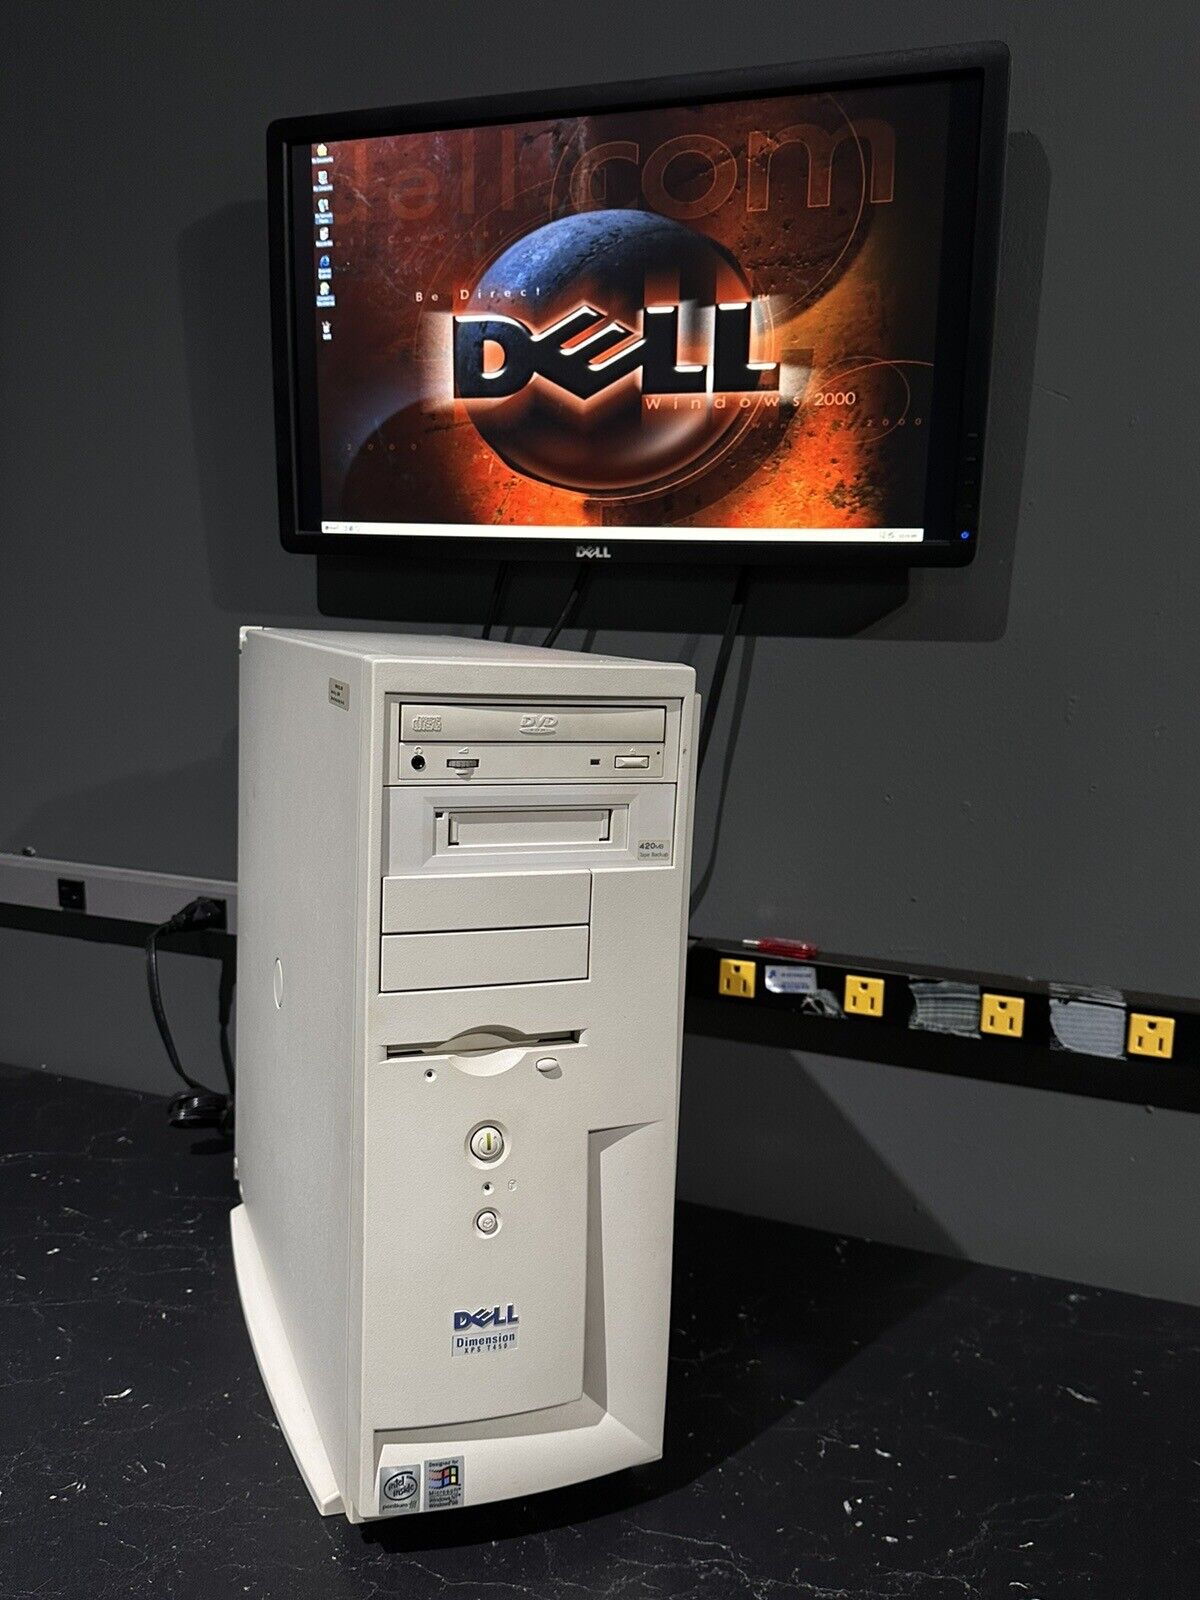 Dell Dimension XPS T450 Voodoo 3 Intel Pentium III 450 MHz 640MB RAM 80GB W2K